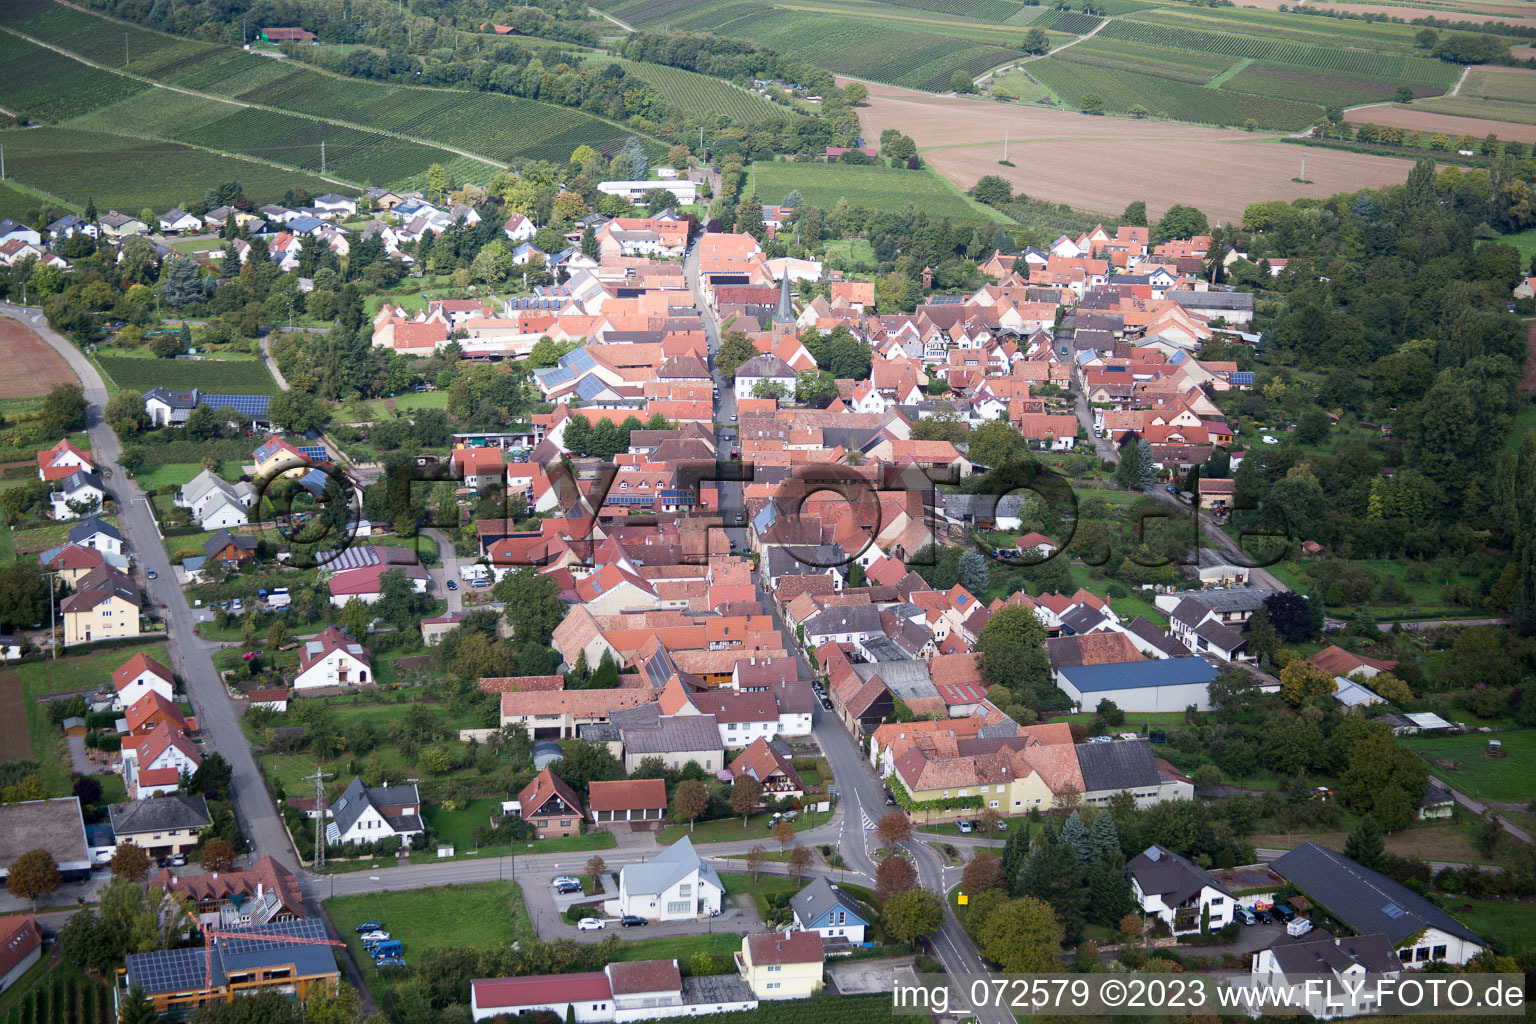 District Heuchelheim in Heuchelheim-Klingen in the state Rhineland-Palatinate, Germany